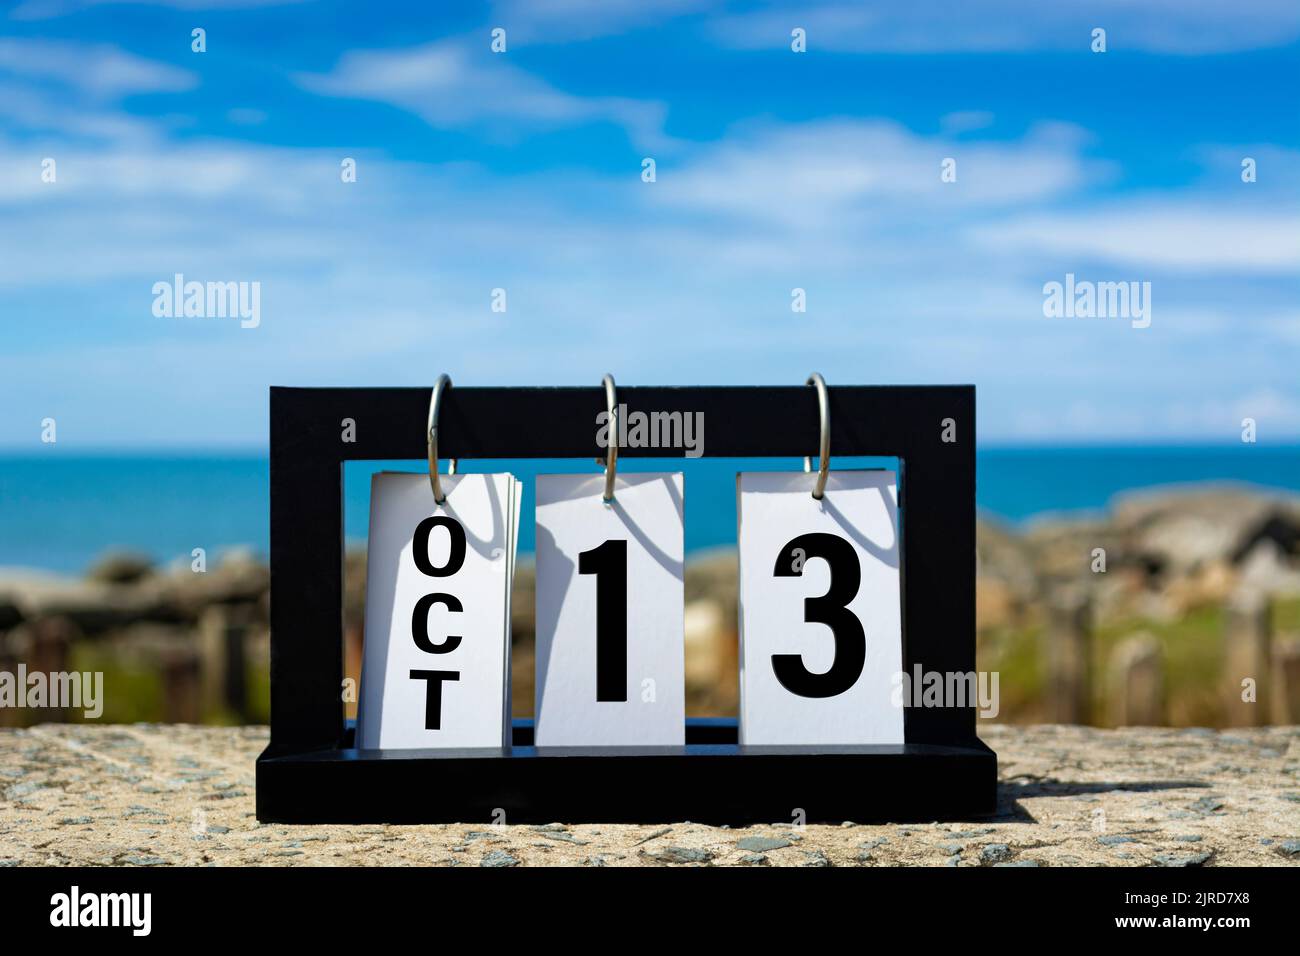 Okt. 13 Kalenderdatumstext auf Holzrahmen mit verschwommenem Hintergrund des Ozeans. Stockfoto